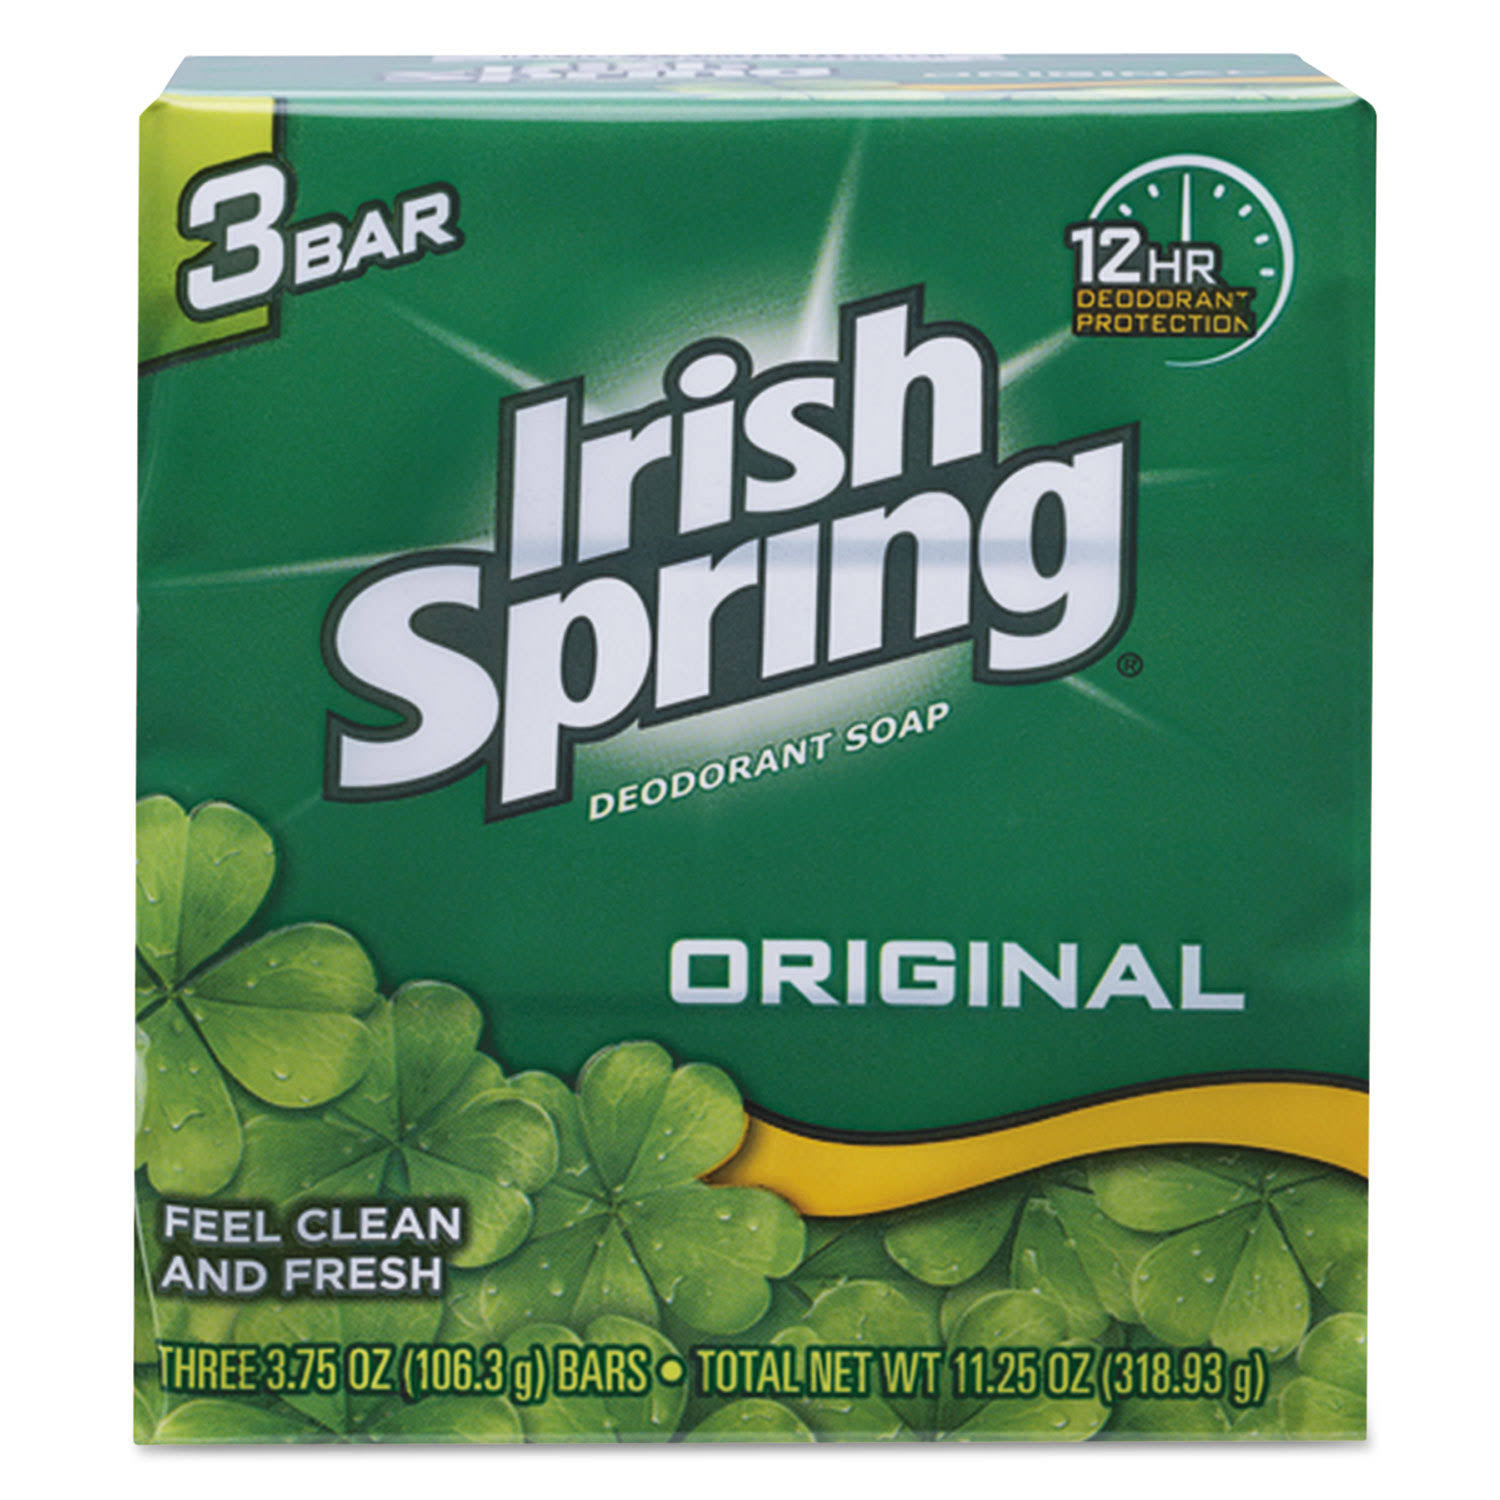 Irish Spring Original Deodorant Soap - 3.75oz, 3ct